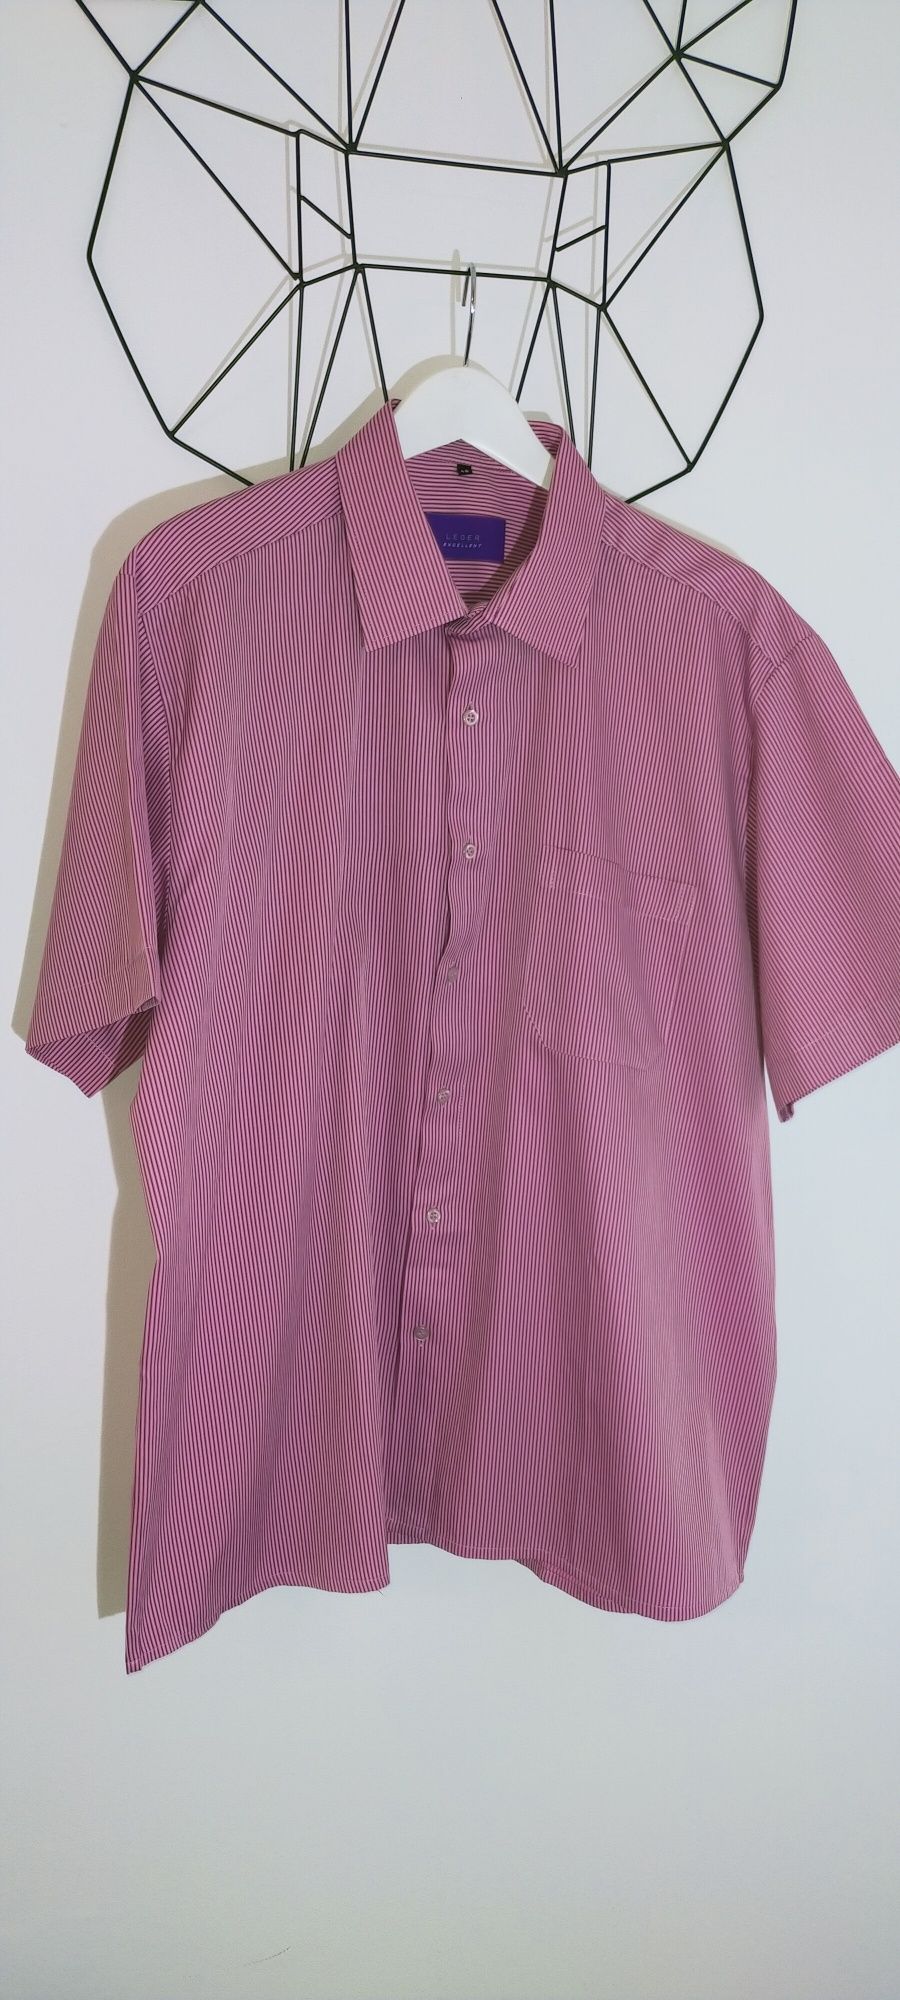 Koszula elegancka wizytowa paski różowa 45 xxxxxl 5xl